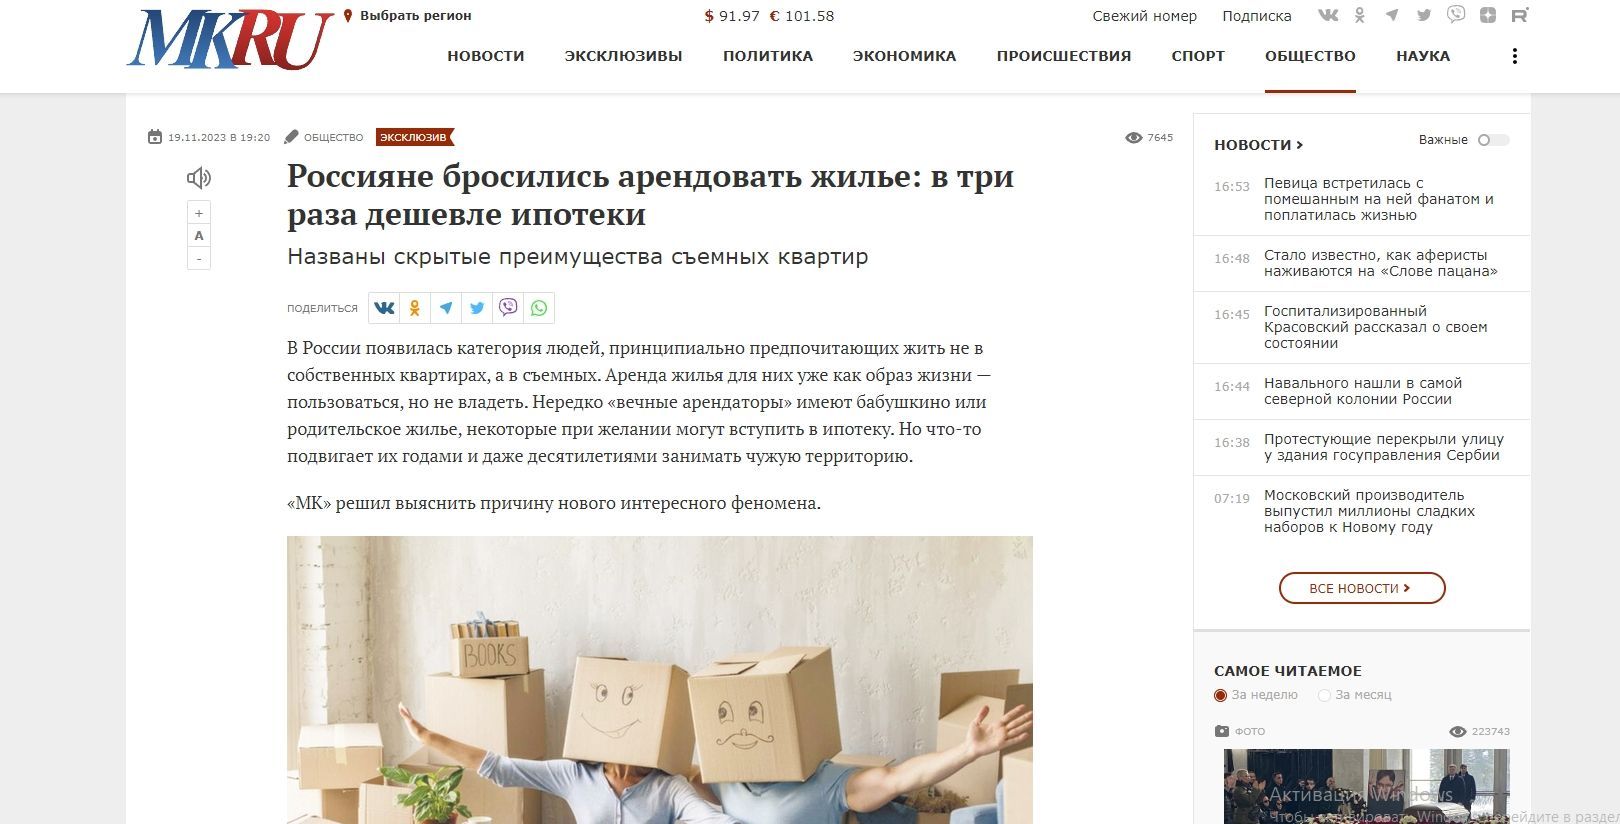 Россияне бросились арендовать жилье: в три раза дешевле ипотеки